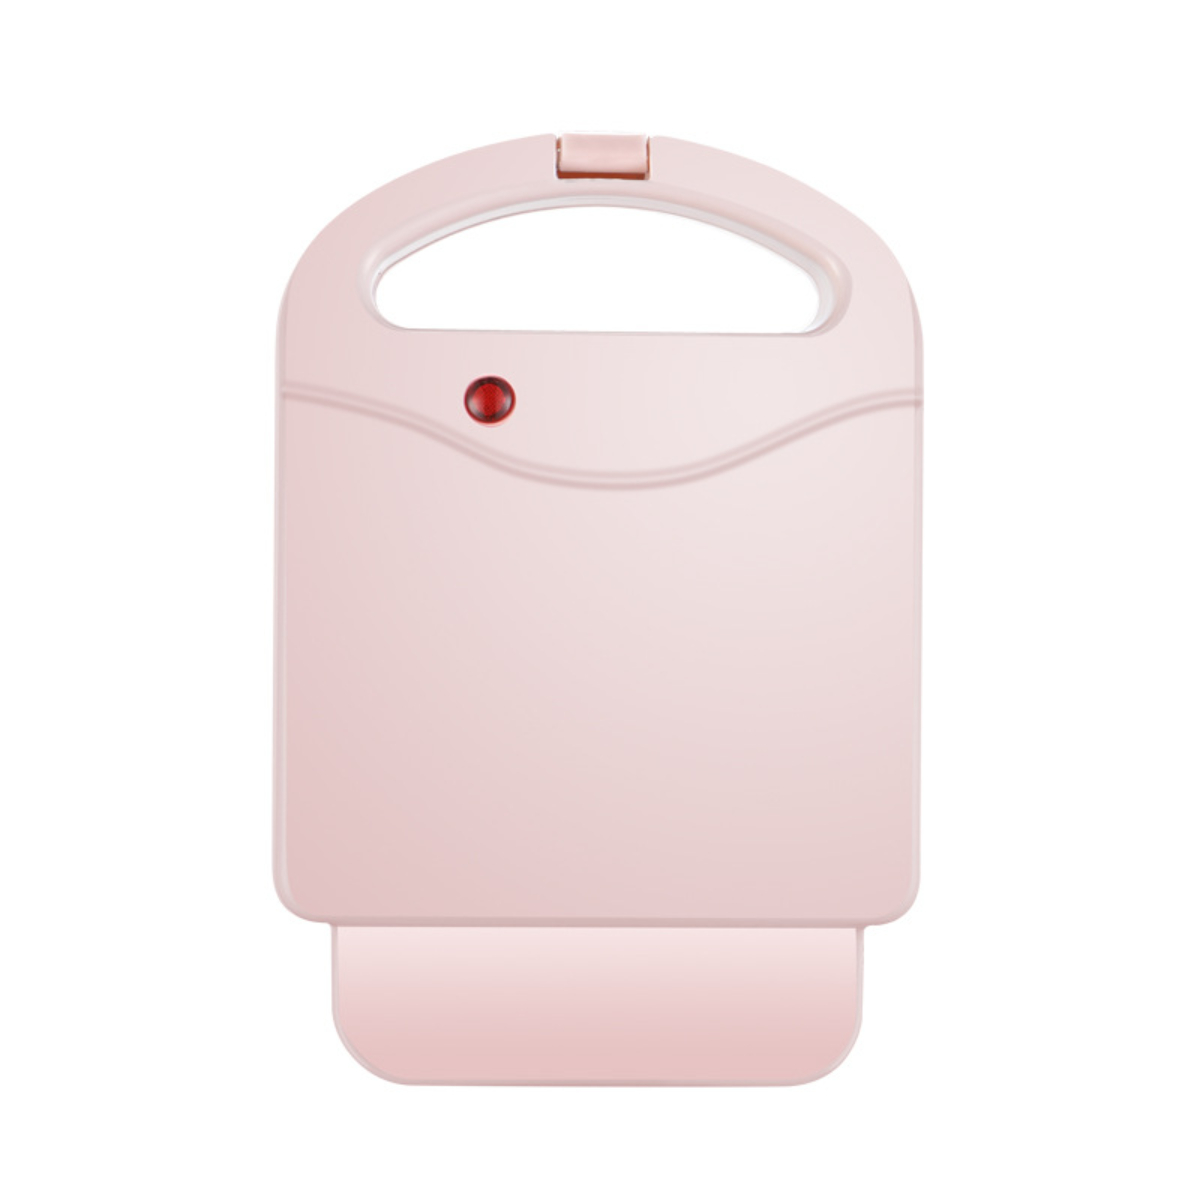 Family Breakfast Rosa Sandwichmaker Pink FEI Multifunktions-Toaster Sandwichmaker Maker